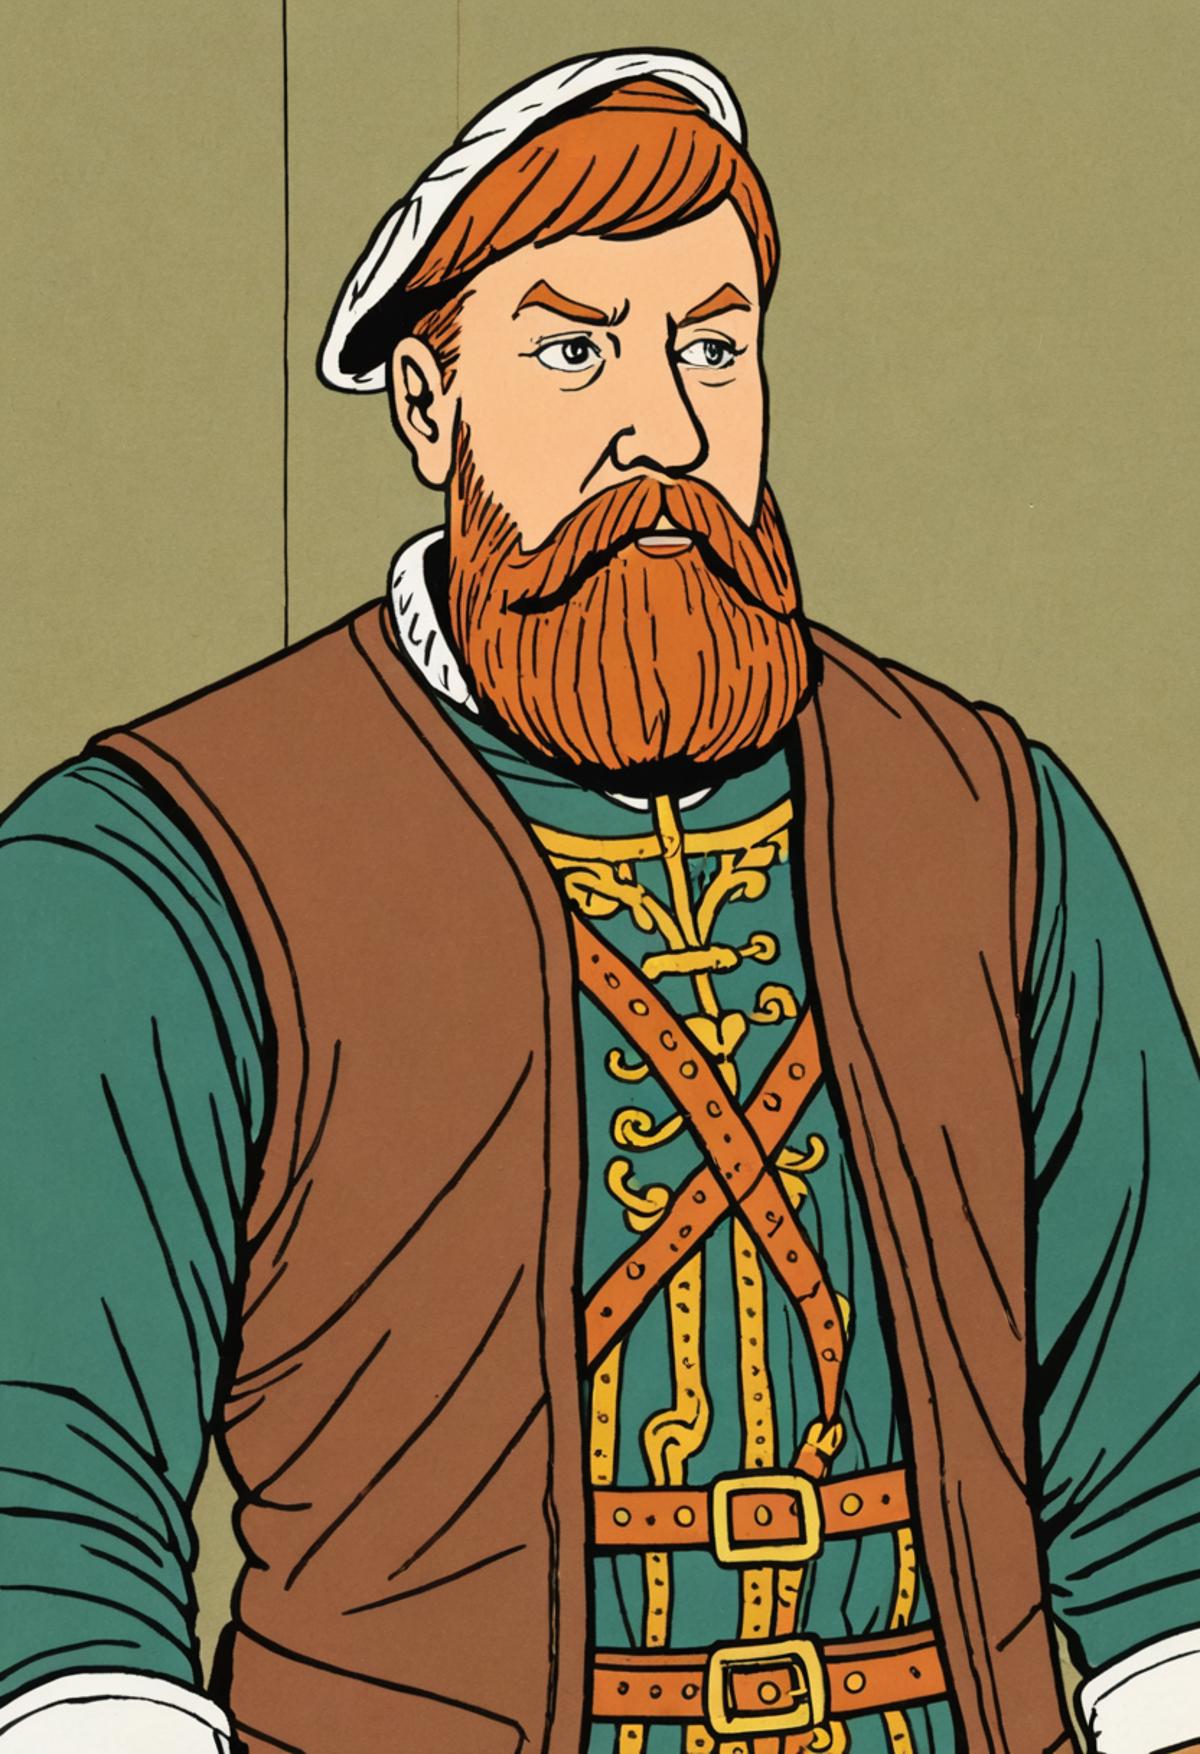 Gustav Vasa (1496 – 1560) – Historical king of Sweden image by WizardWhitebeard